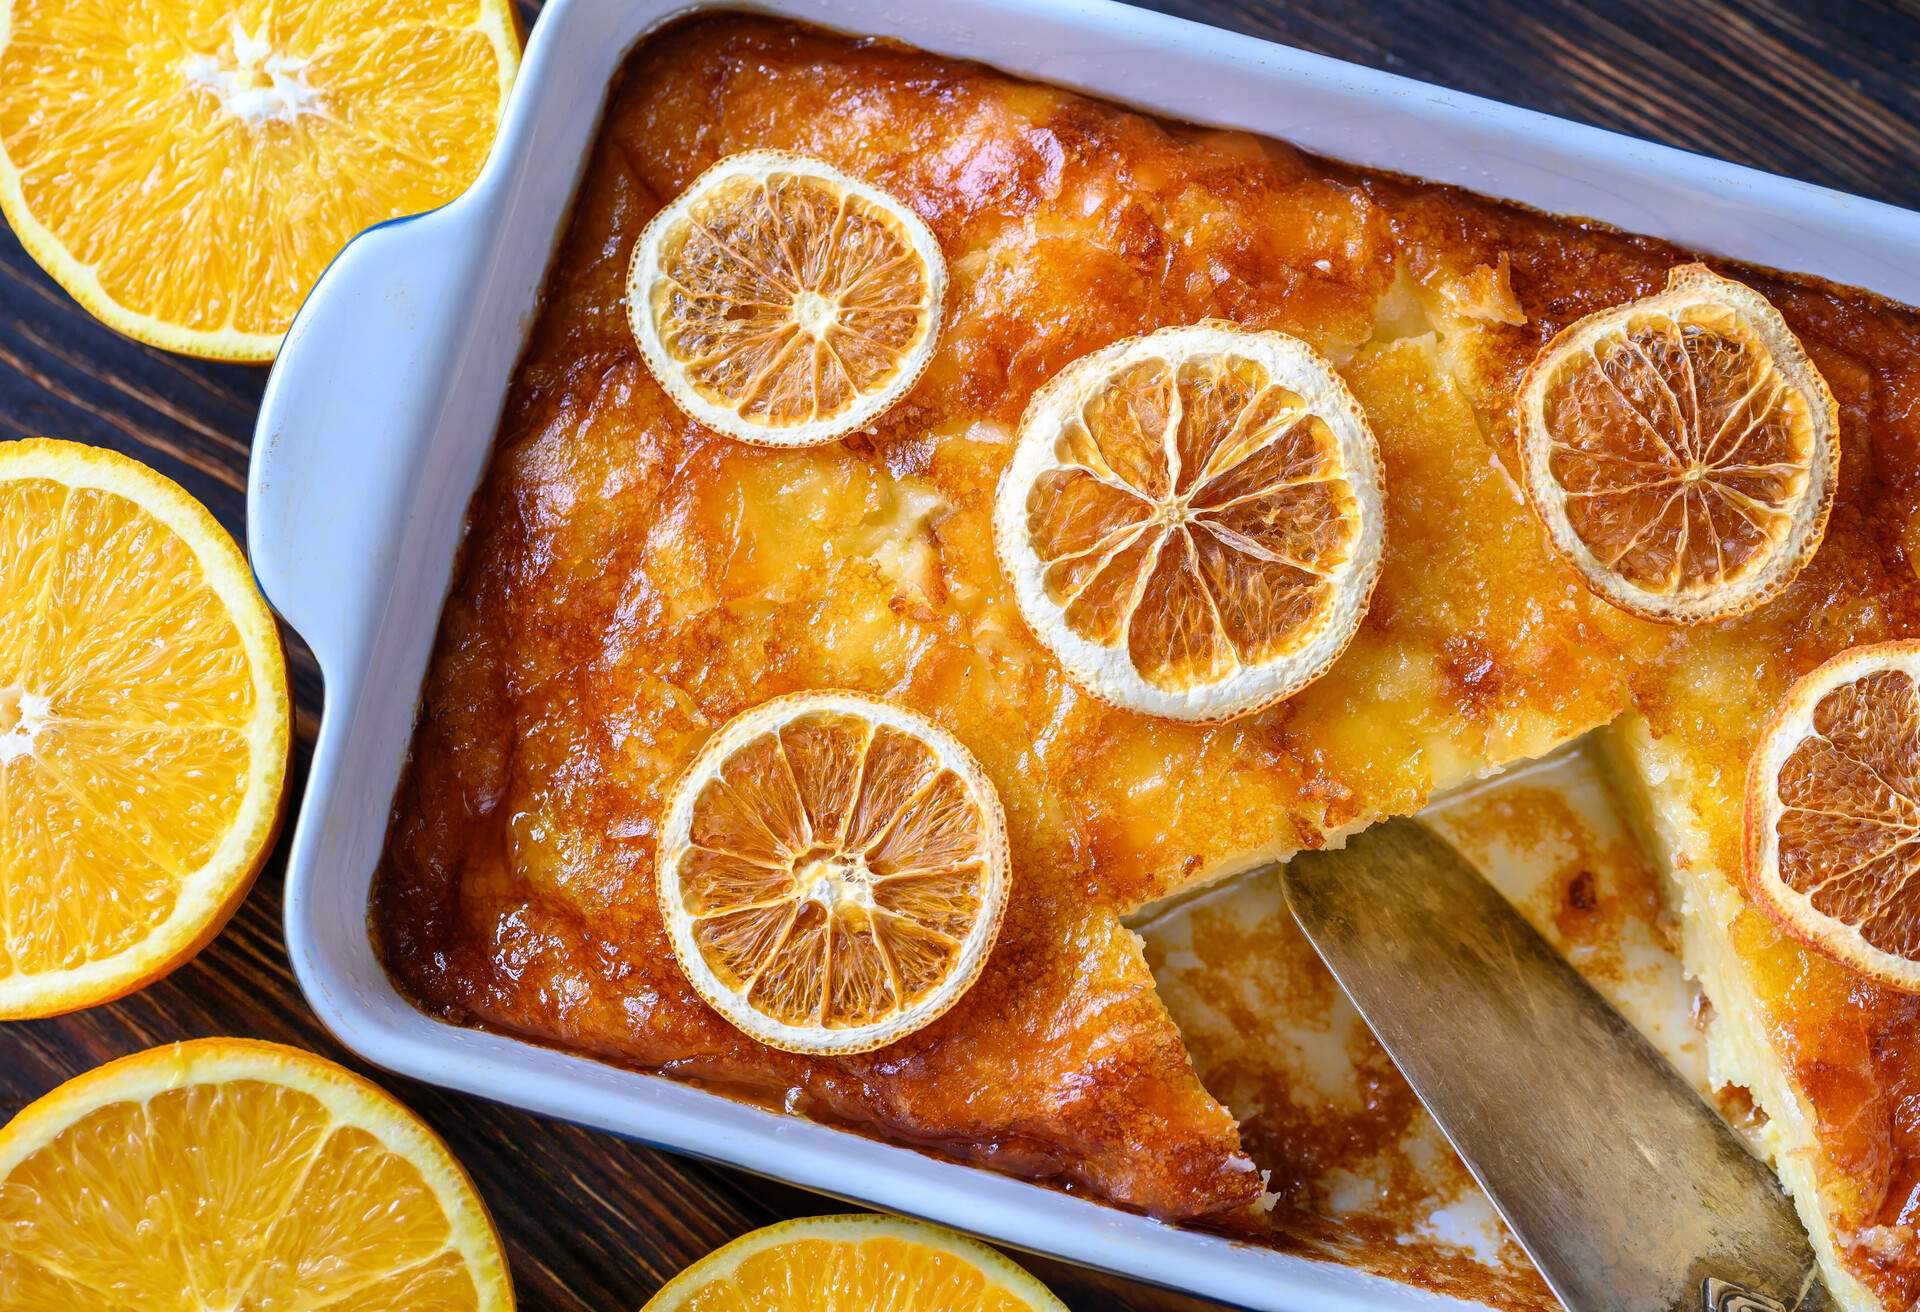 Portokalopita - Greek phyllo orange cake in a baking pan